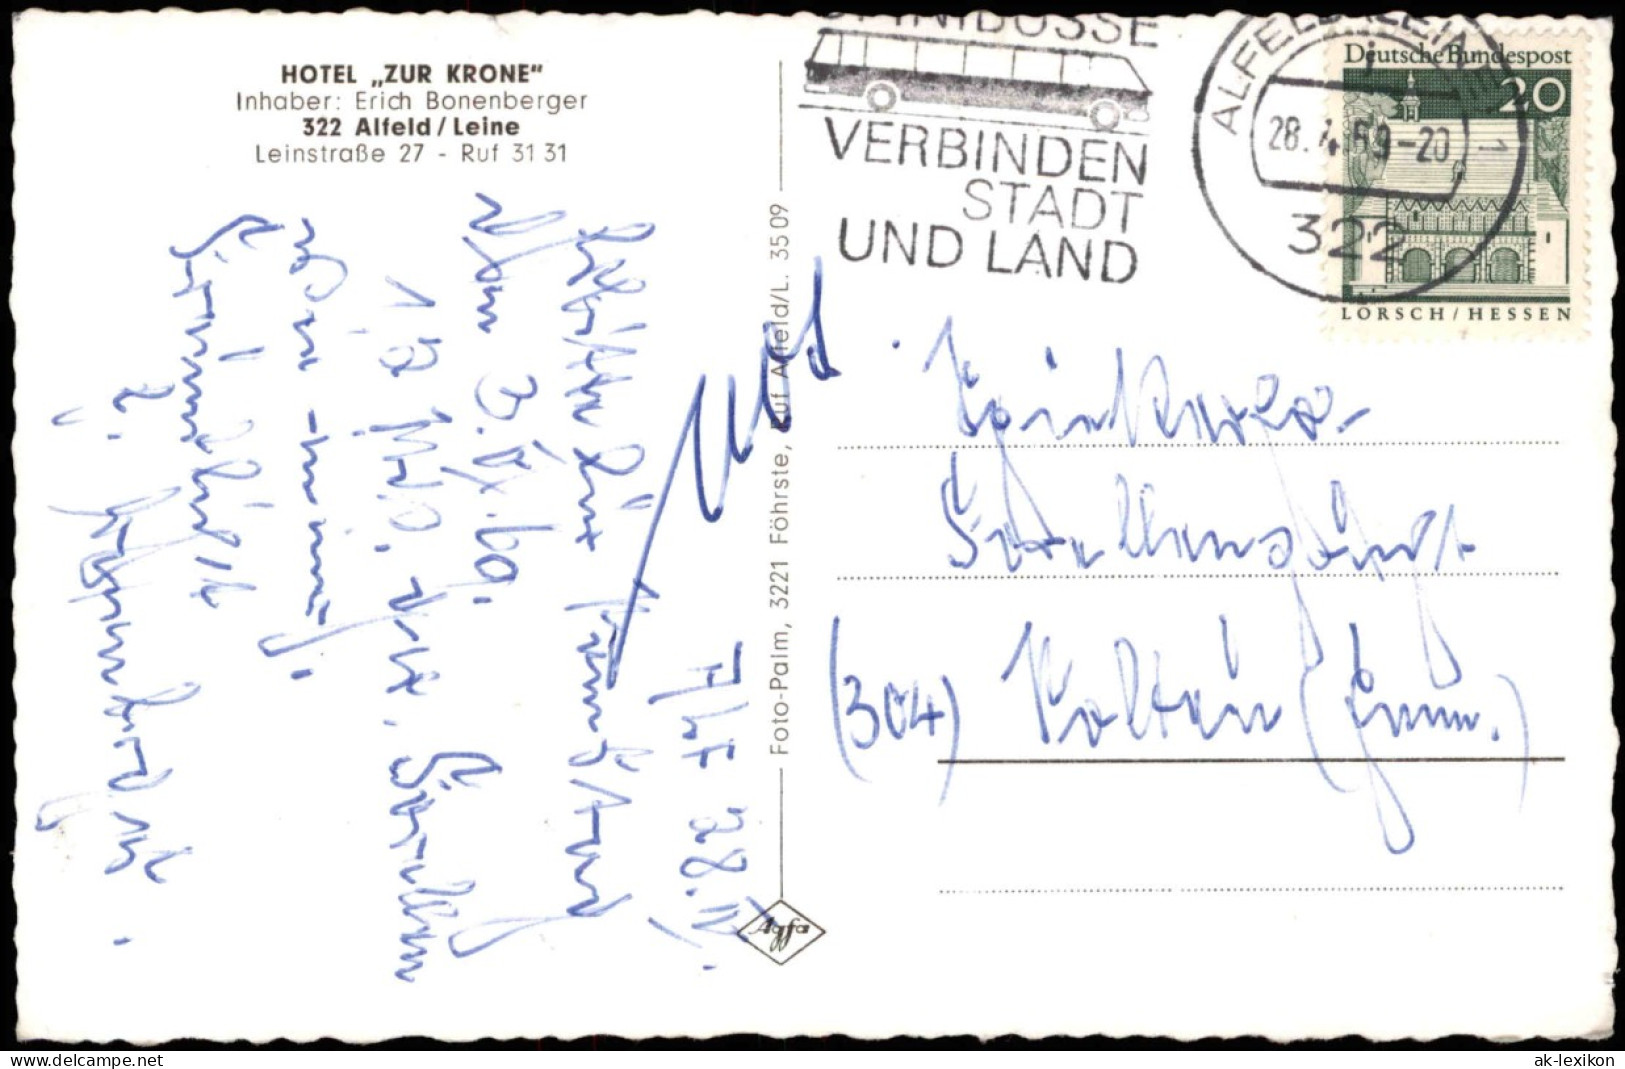 Ansichtskarte Alfeld (Leine) Hotel Zur Krone - MB Leinstraße 27 1969 - Alfeld